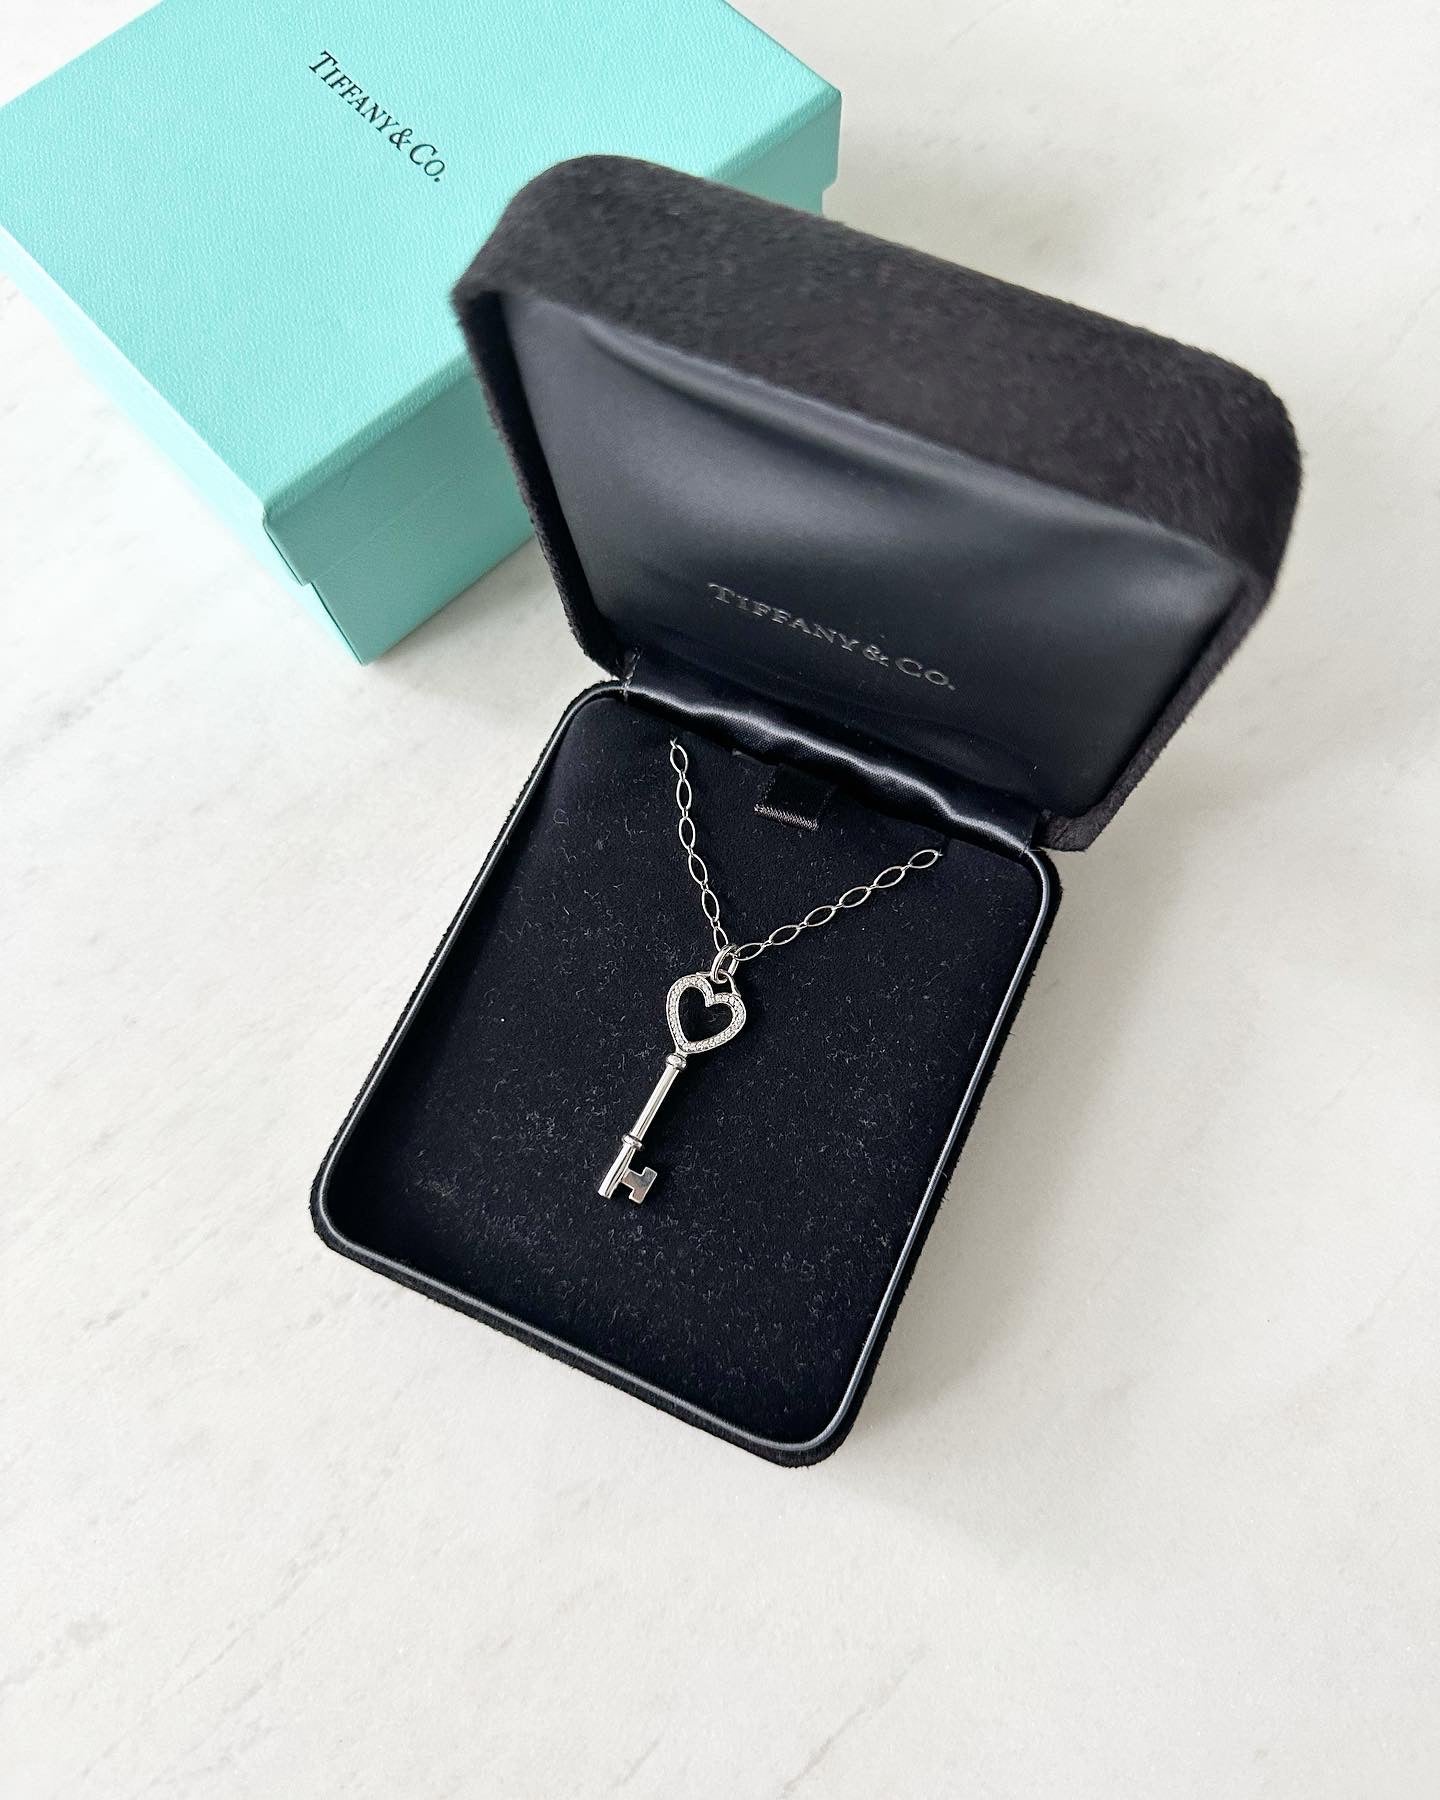 Tiffany and company diamond heart key necklace